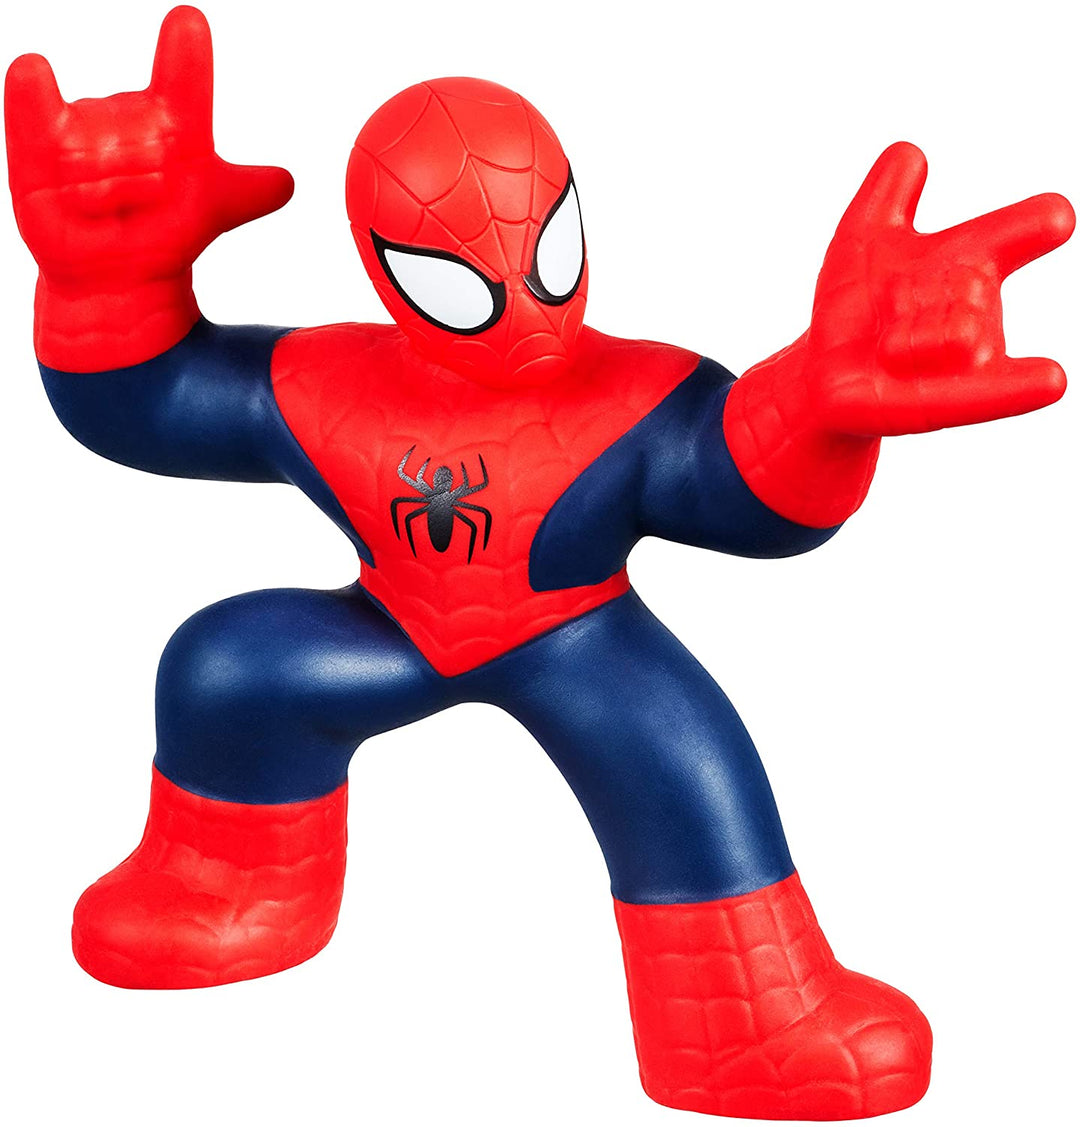 Marvel Heroes of Goo Jit Zu Spiderman